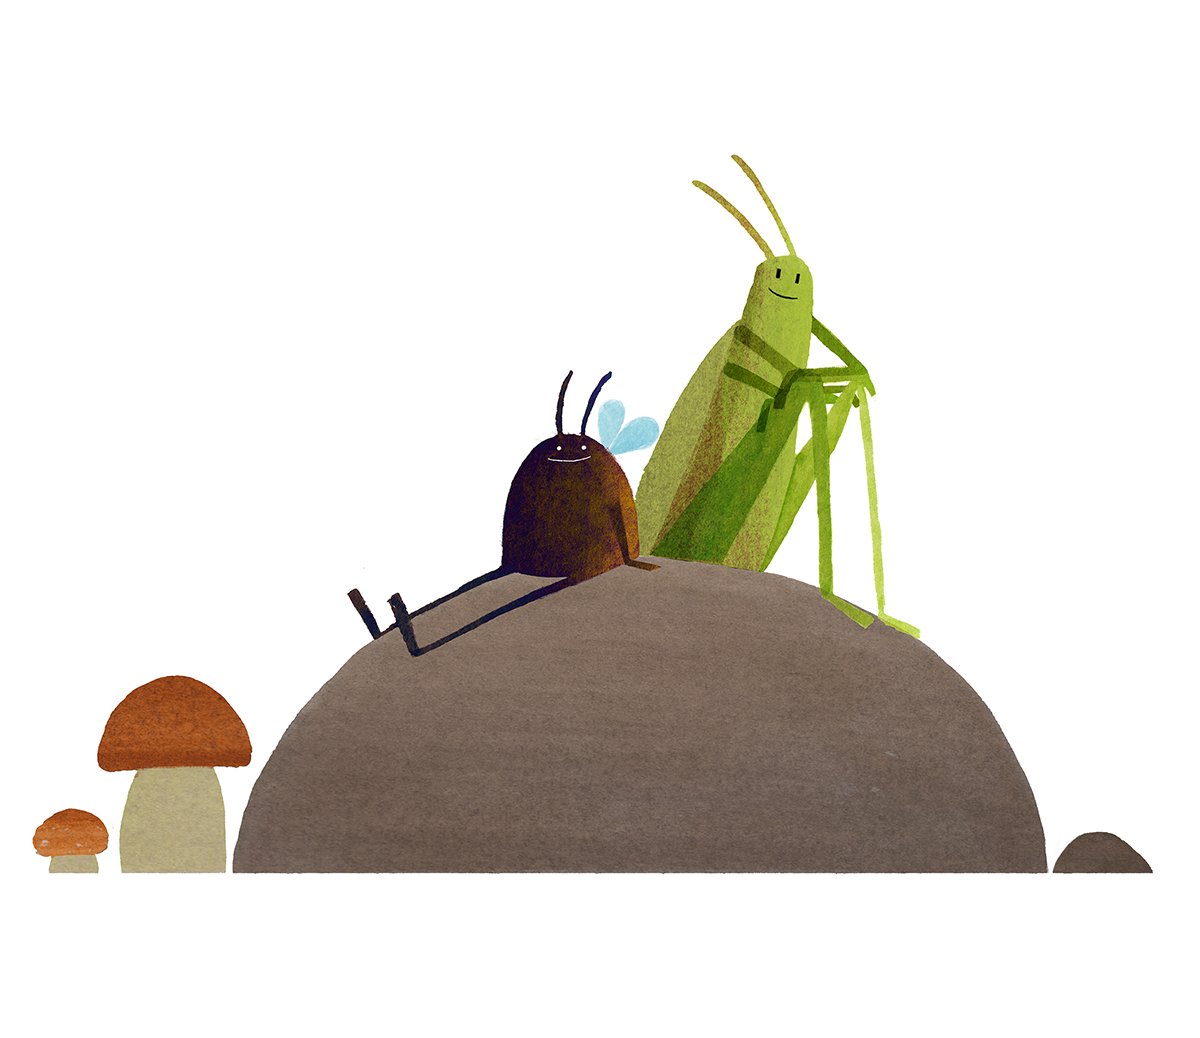 steve-small-bugs-illustration.jpg